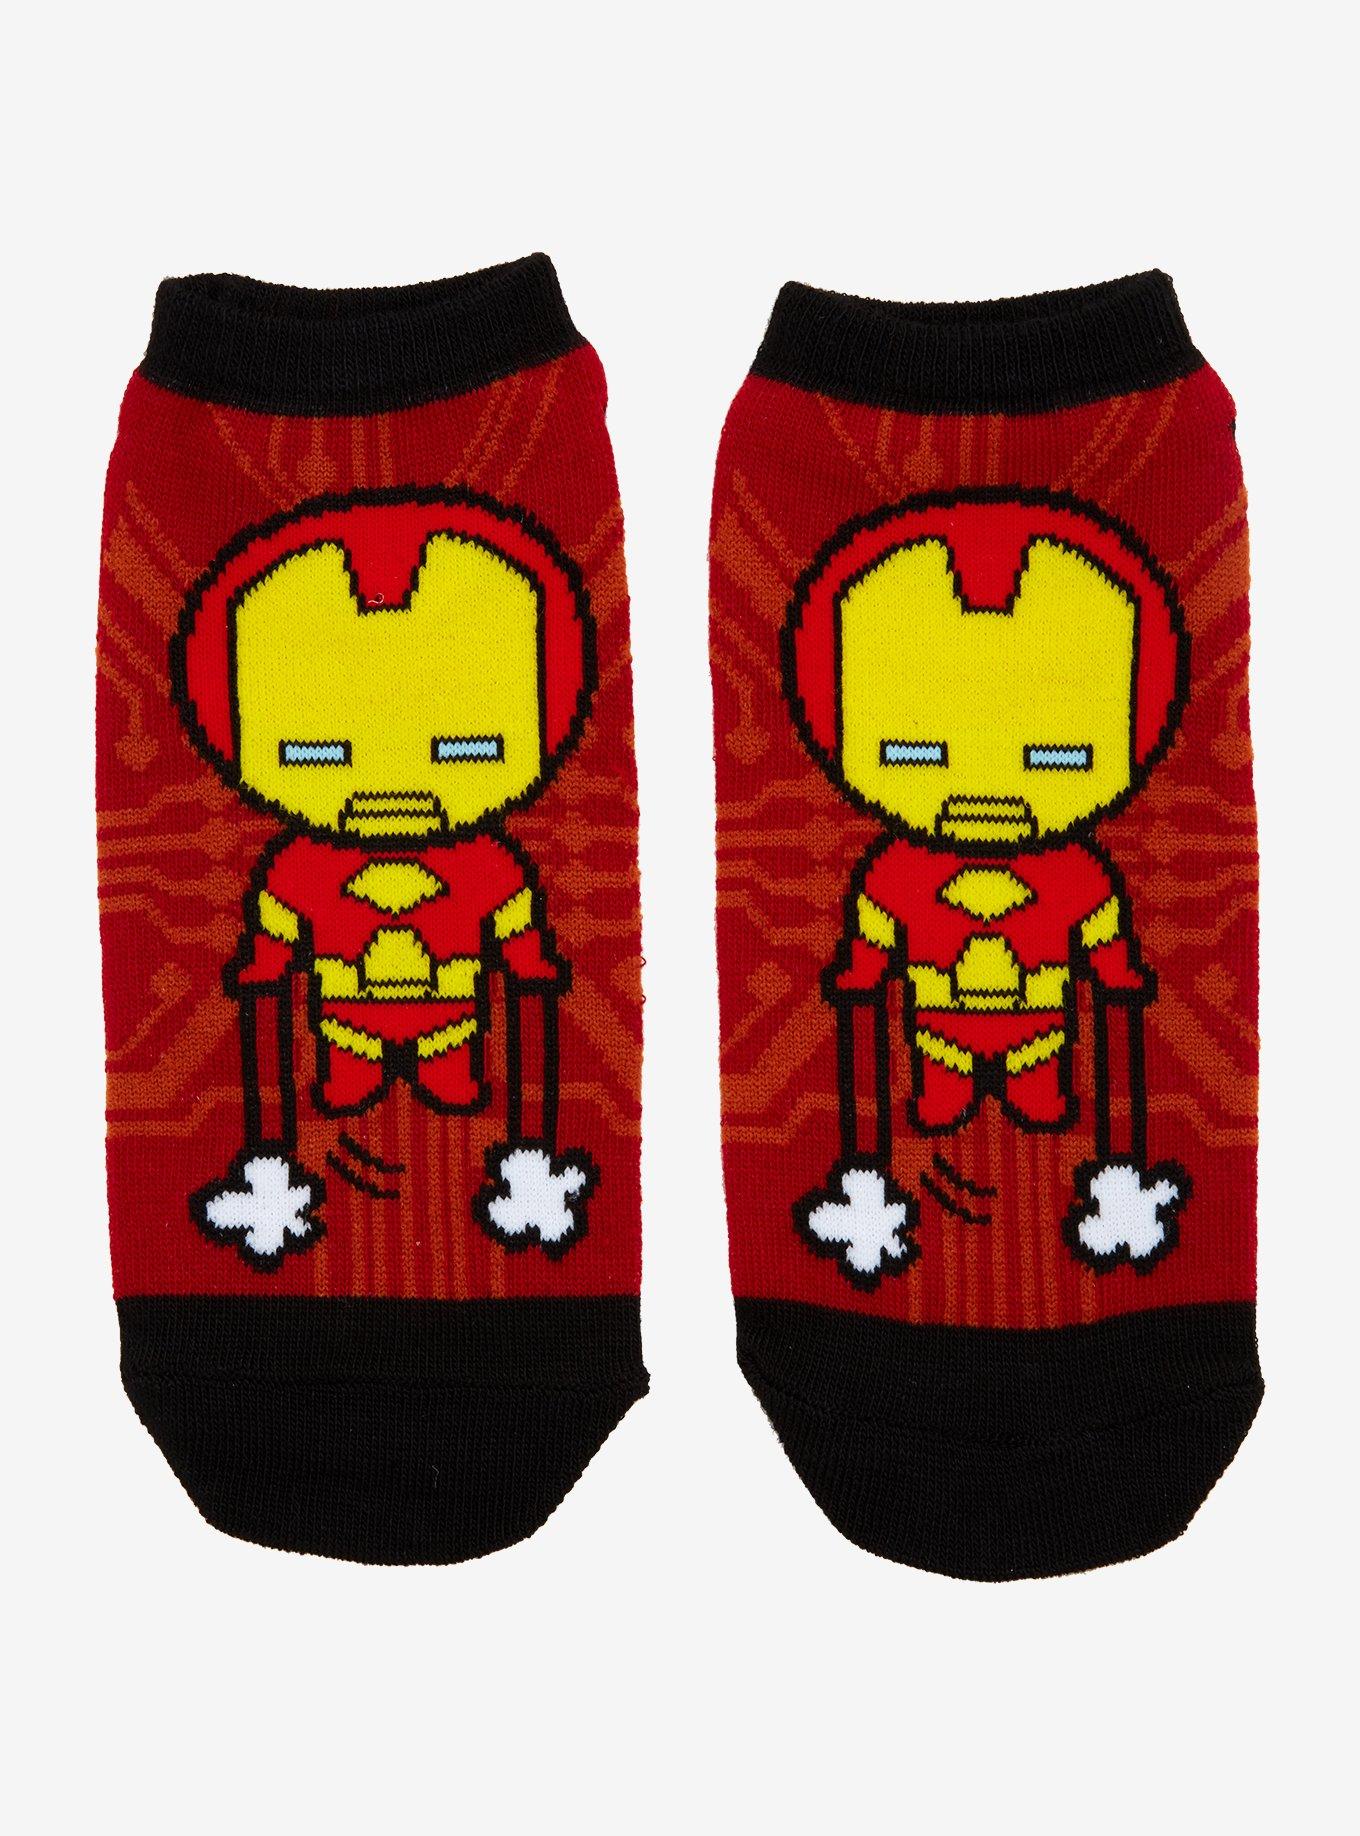 Marvel Avengers Chibi Iron Man No-Show Socks, , hi-res